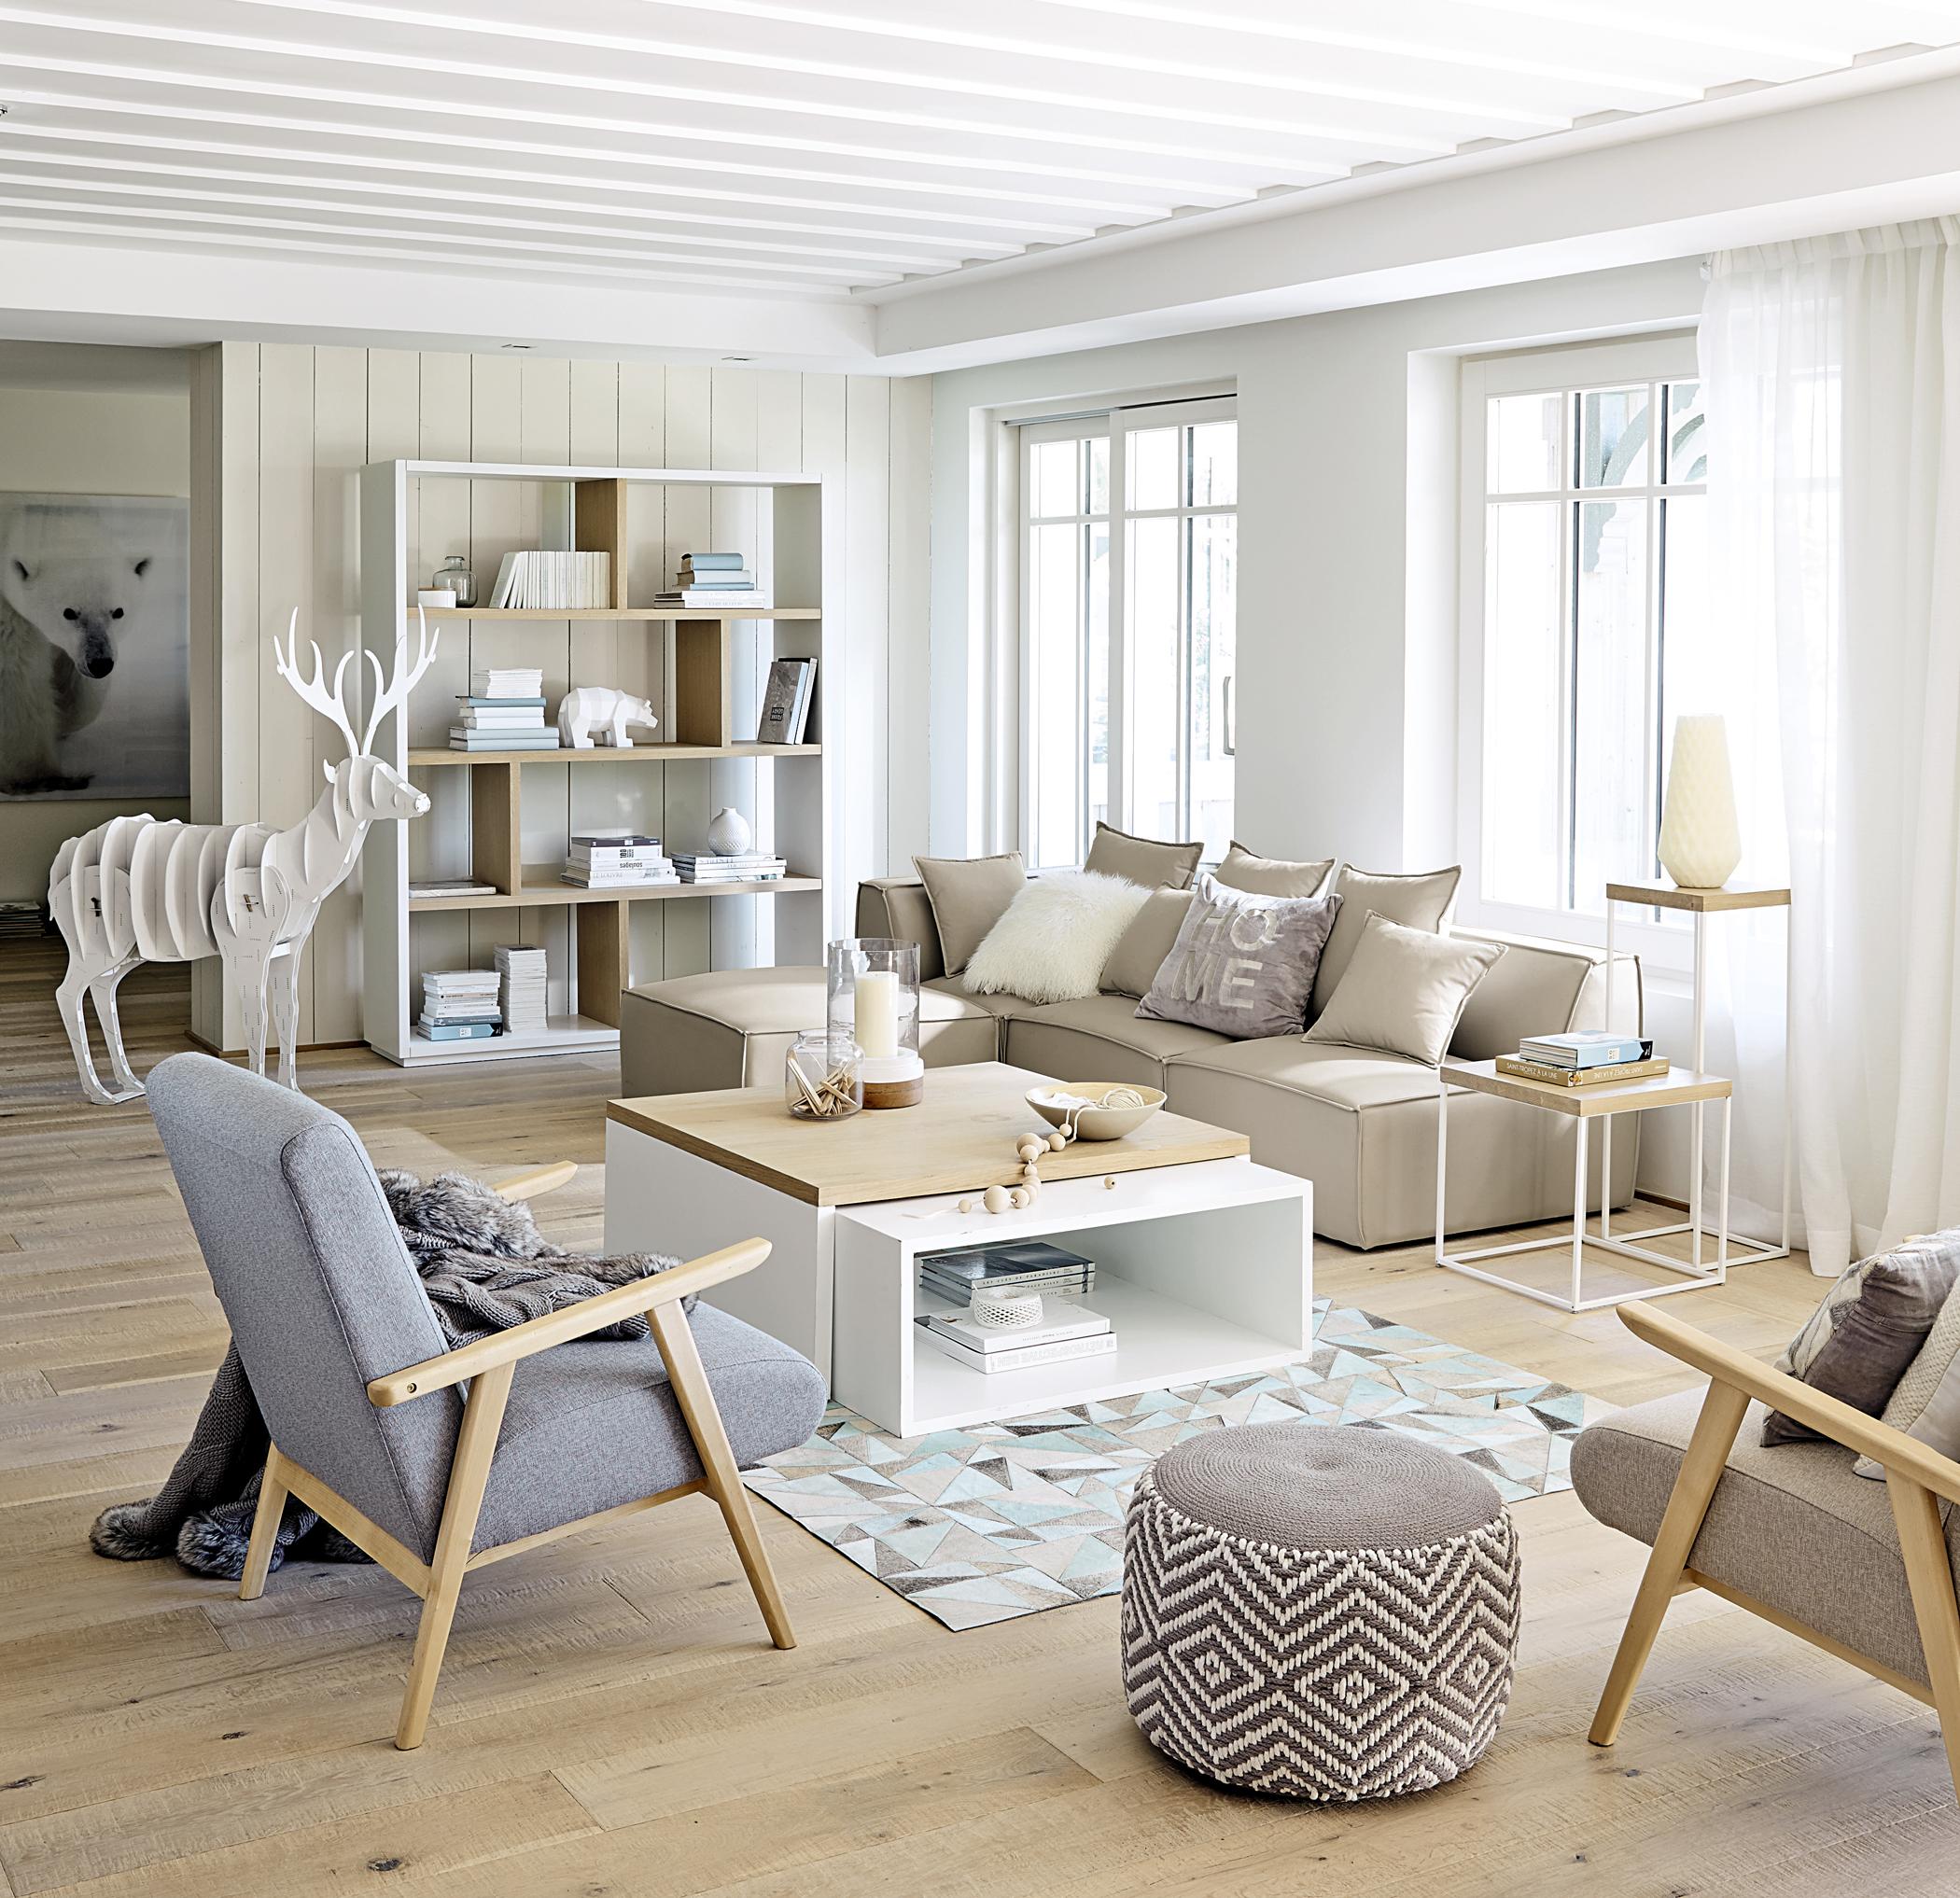 Skandinavischer Look im Wohnzimmer #dielenboden #grauersessel #zimmergestaltung ©Maisons du Monde